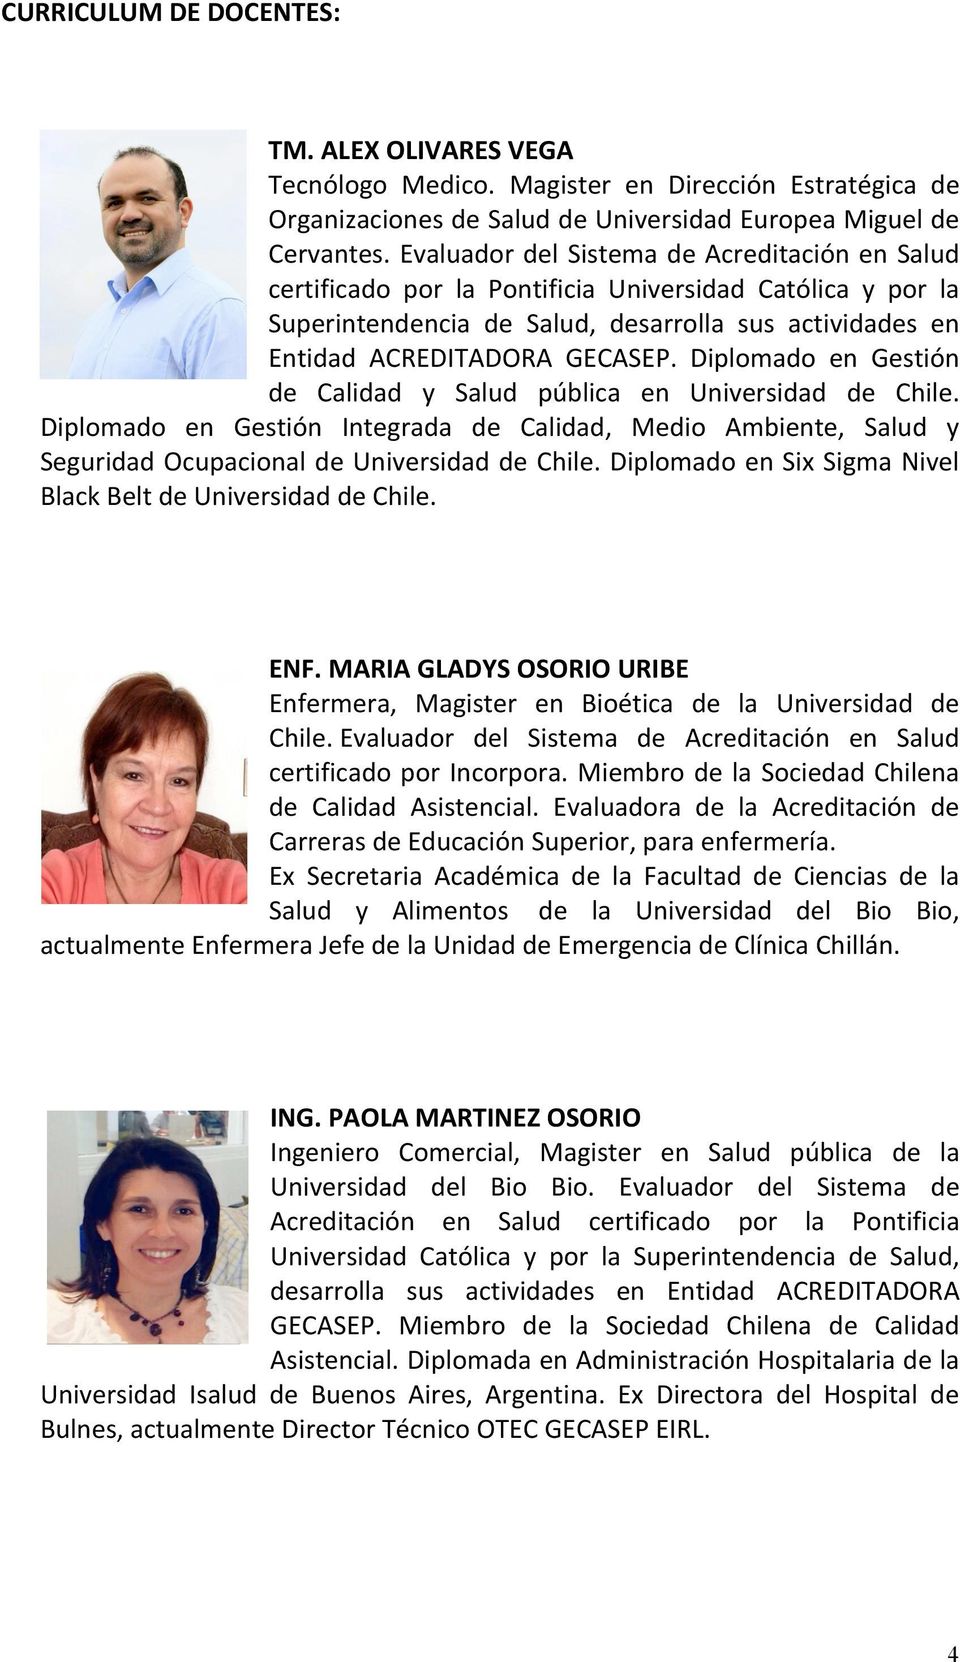 Diplomado en Gestión de Calidad y Salud pública en Universidad de Chile. Diplomado en Gestión Integrada de Calidad, Medio Ambiente, Salud y Seguridad Ocupacional de Universidad de Chile.